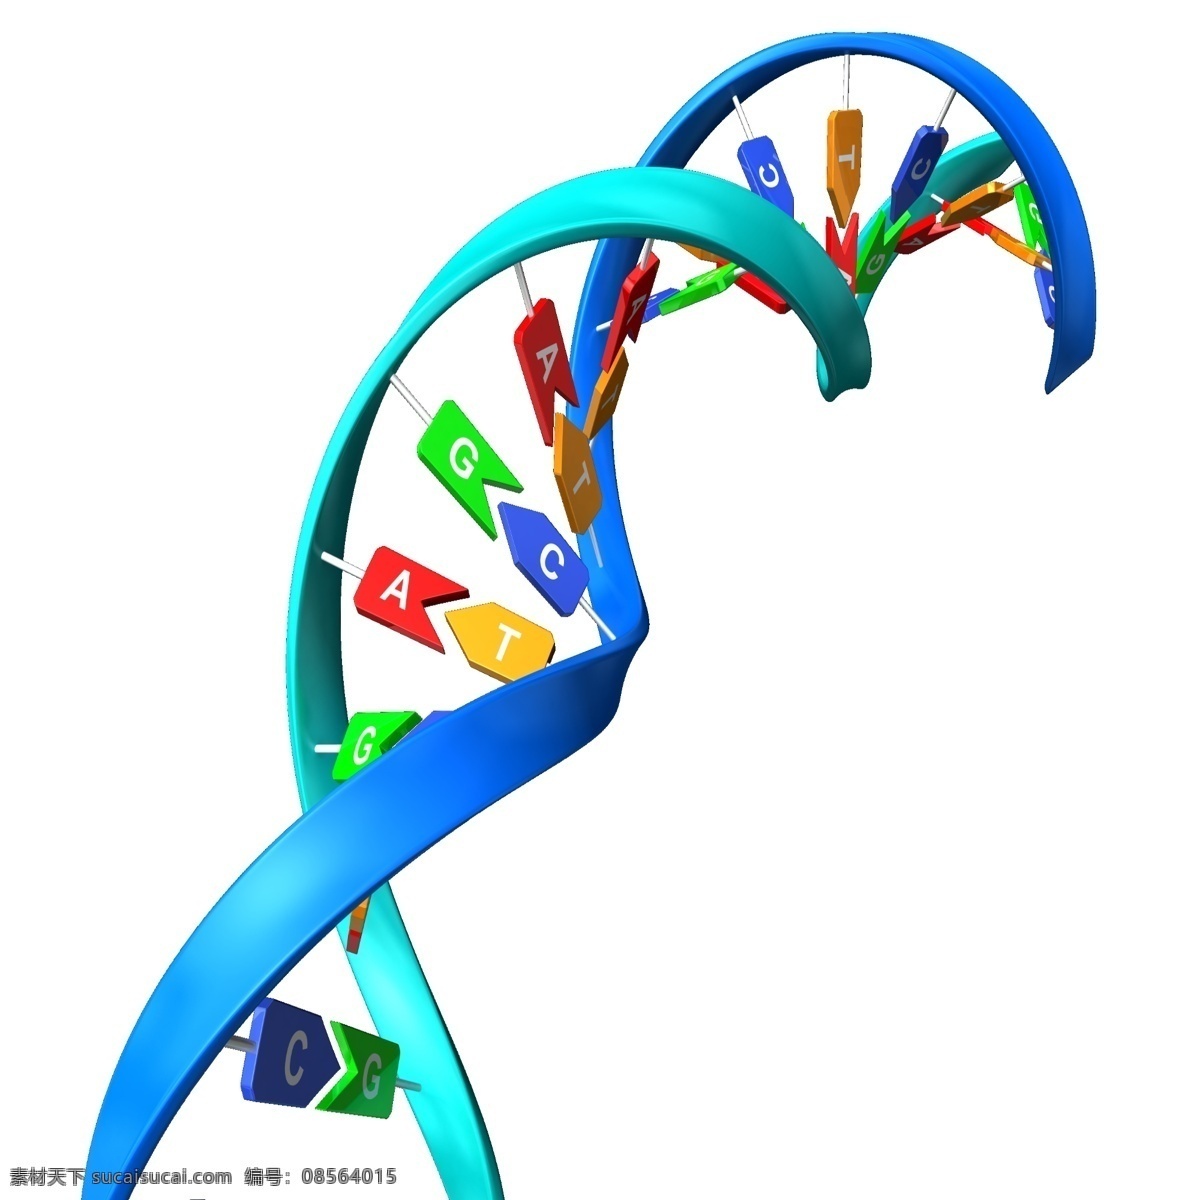 dna 双螺旋 分子 dna双螺旋 脱氧核糖核酸 医学 基因 基因图片 微观科学 基因链 染色体 3d设计